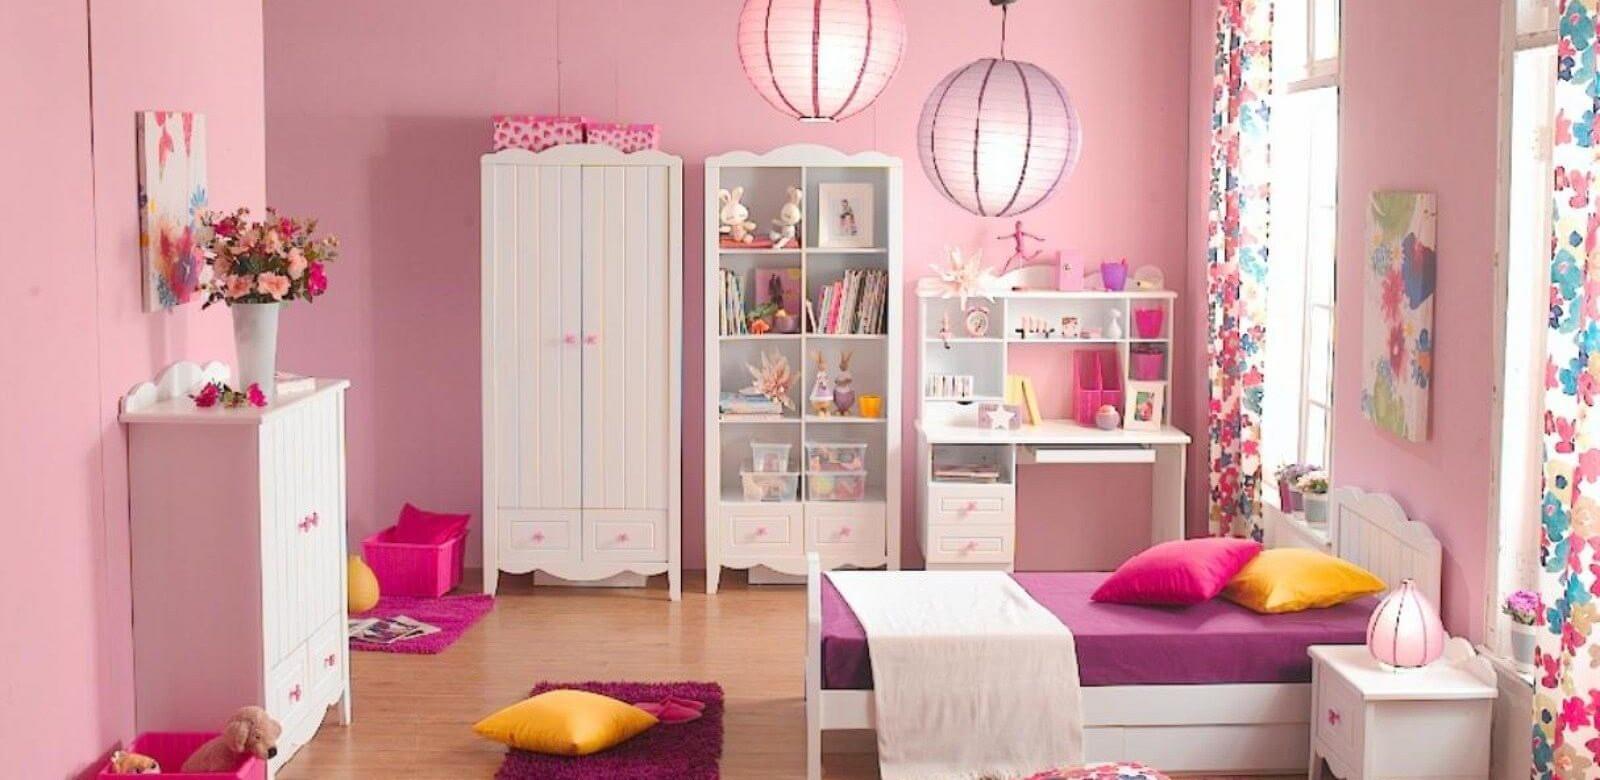 17 ιδέες διακόσμησης για παιδικό δωμάτιο!